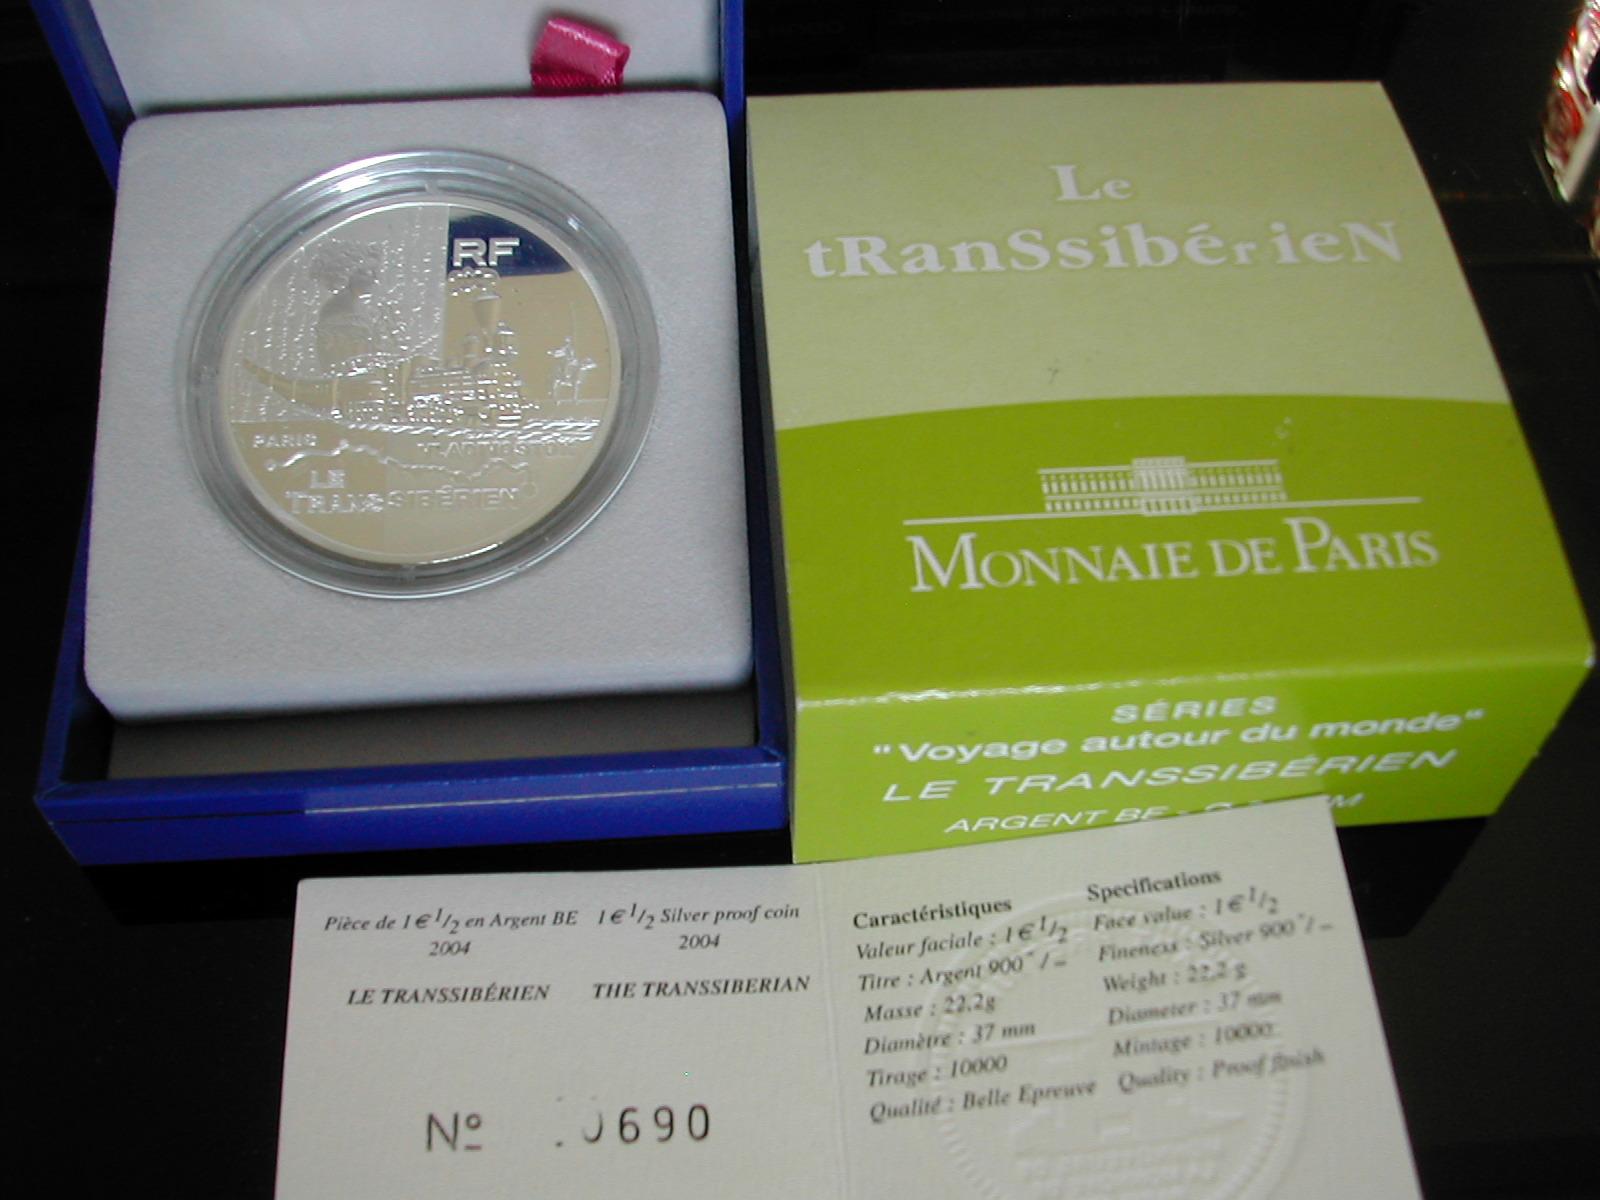 1 5 france 2004 le transsiberien a